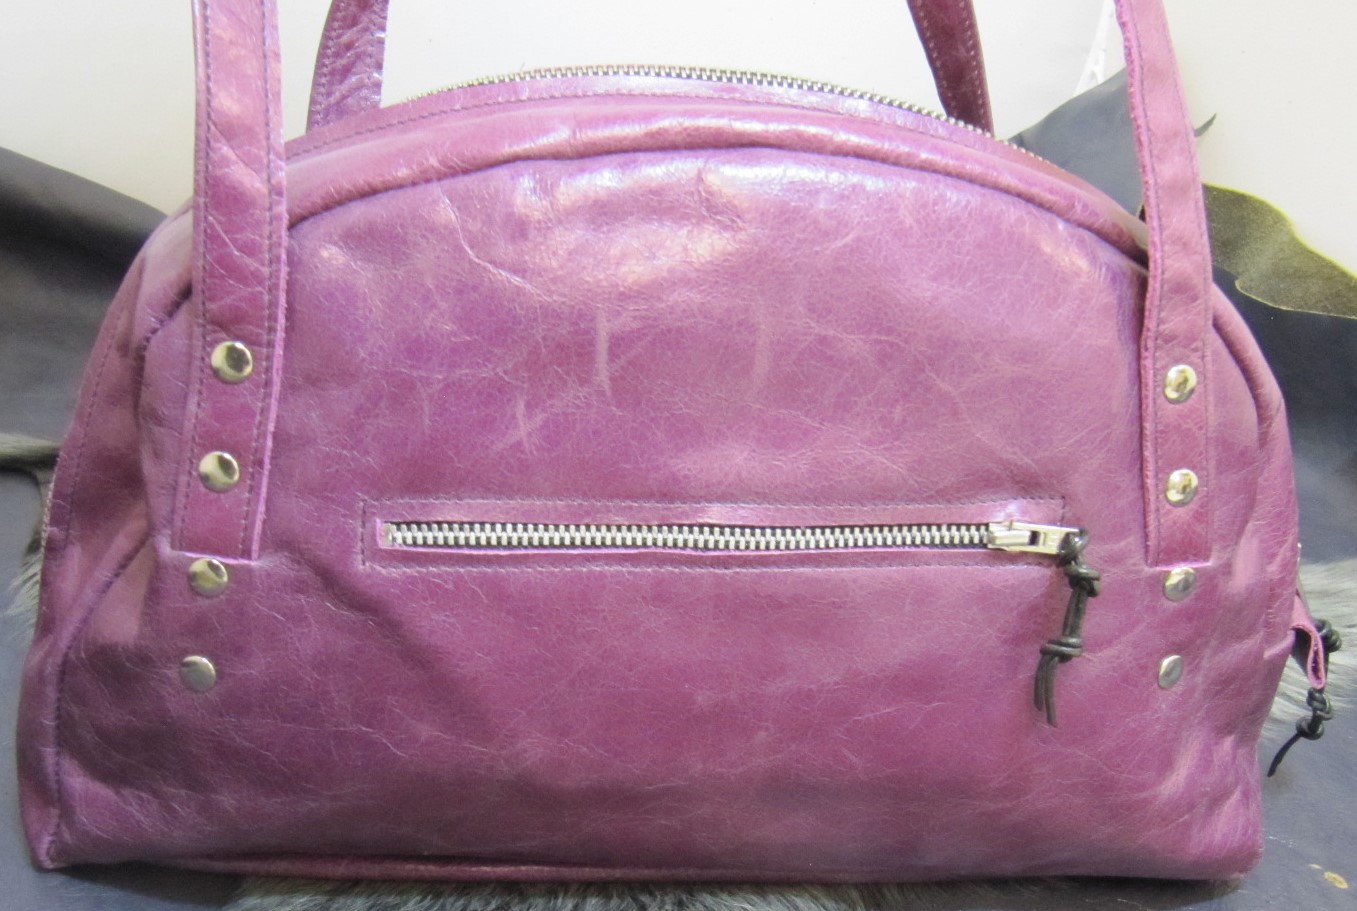 Purple leather half moon handbag